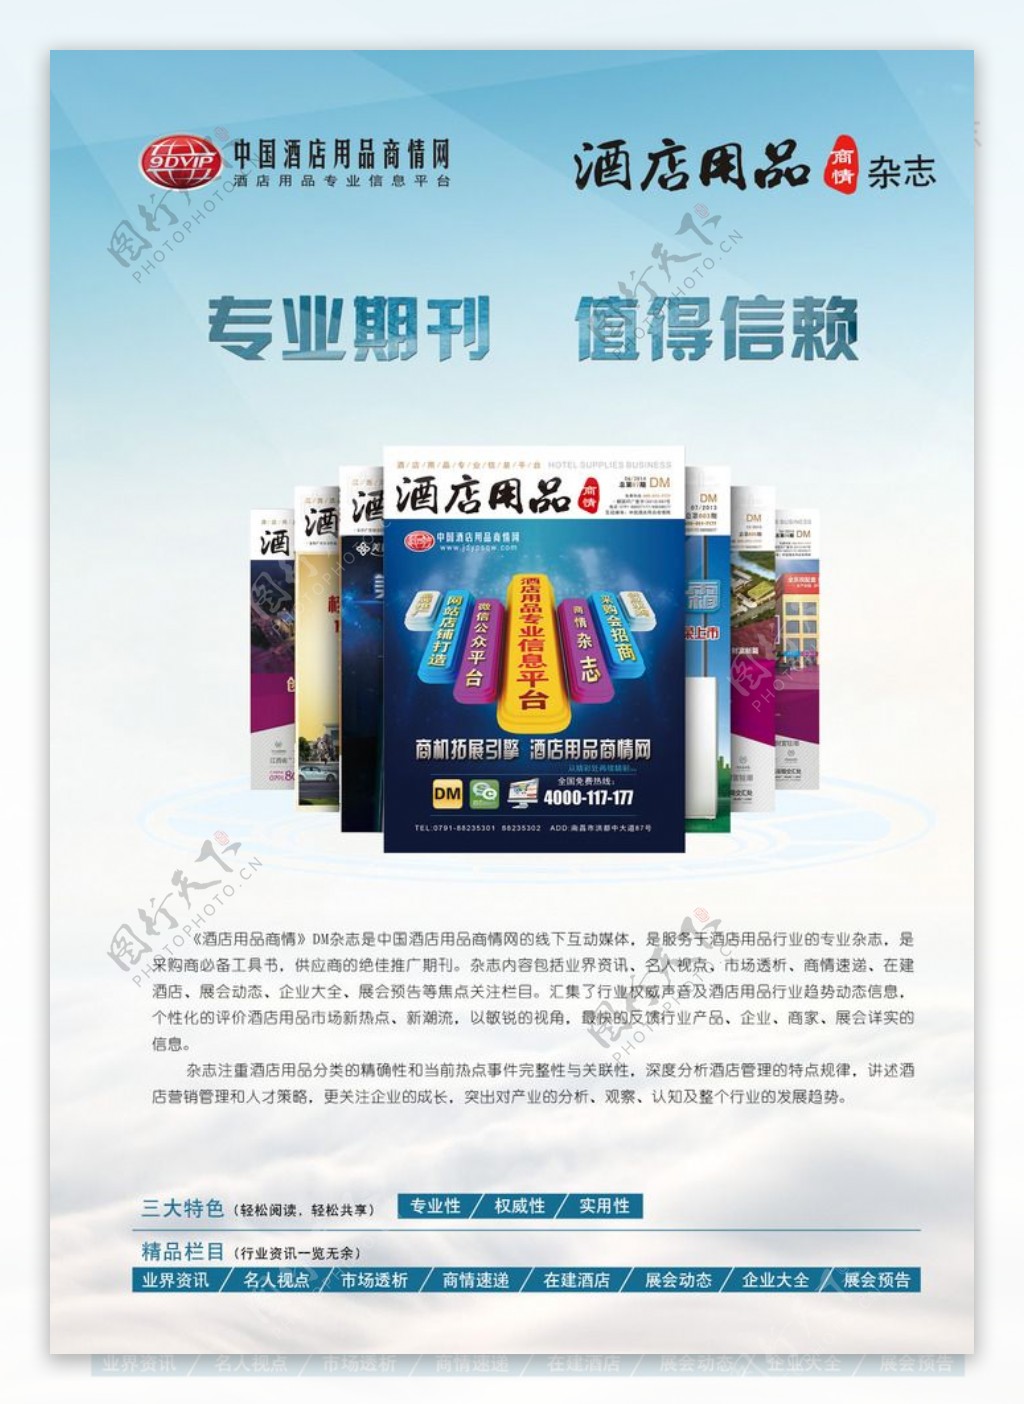 中国酒店用品商情网dm杂志海报图片